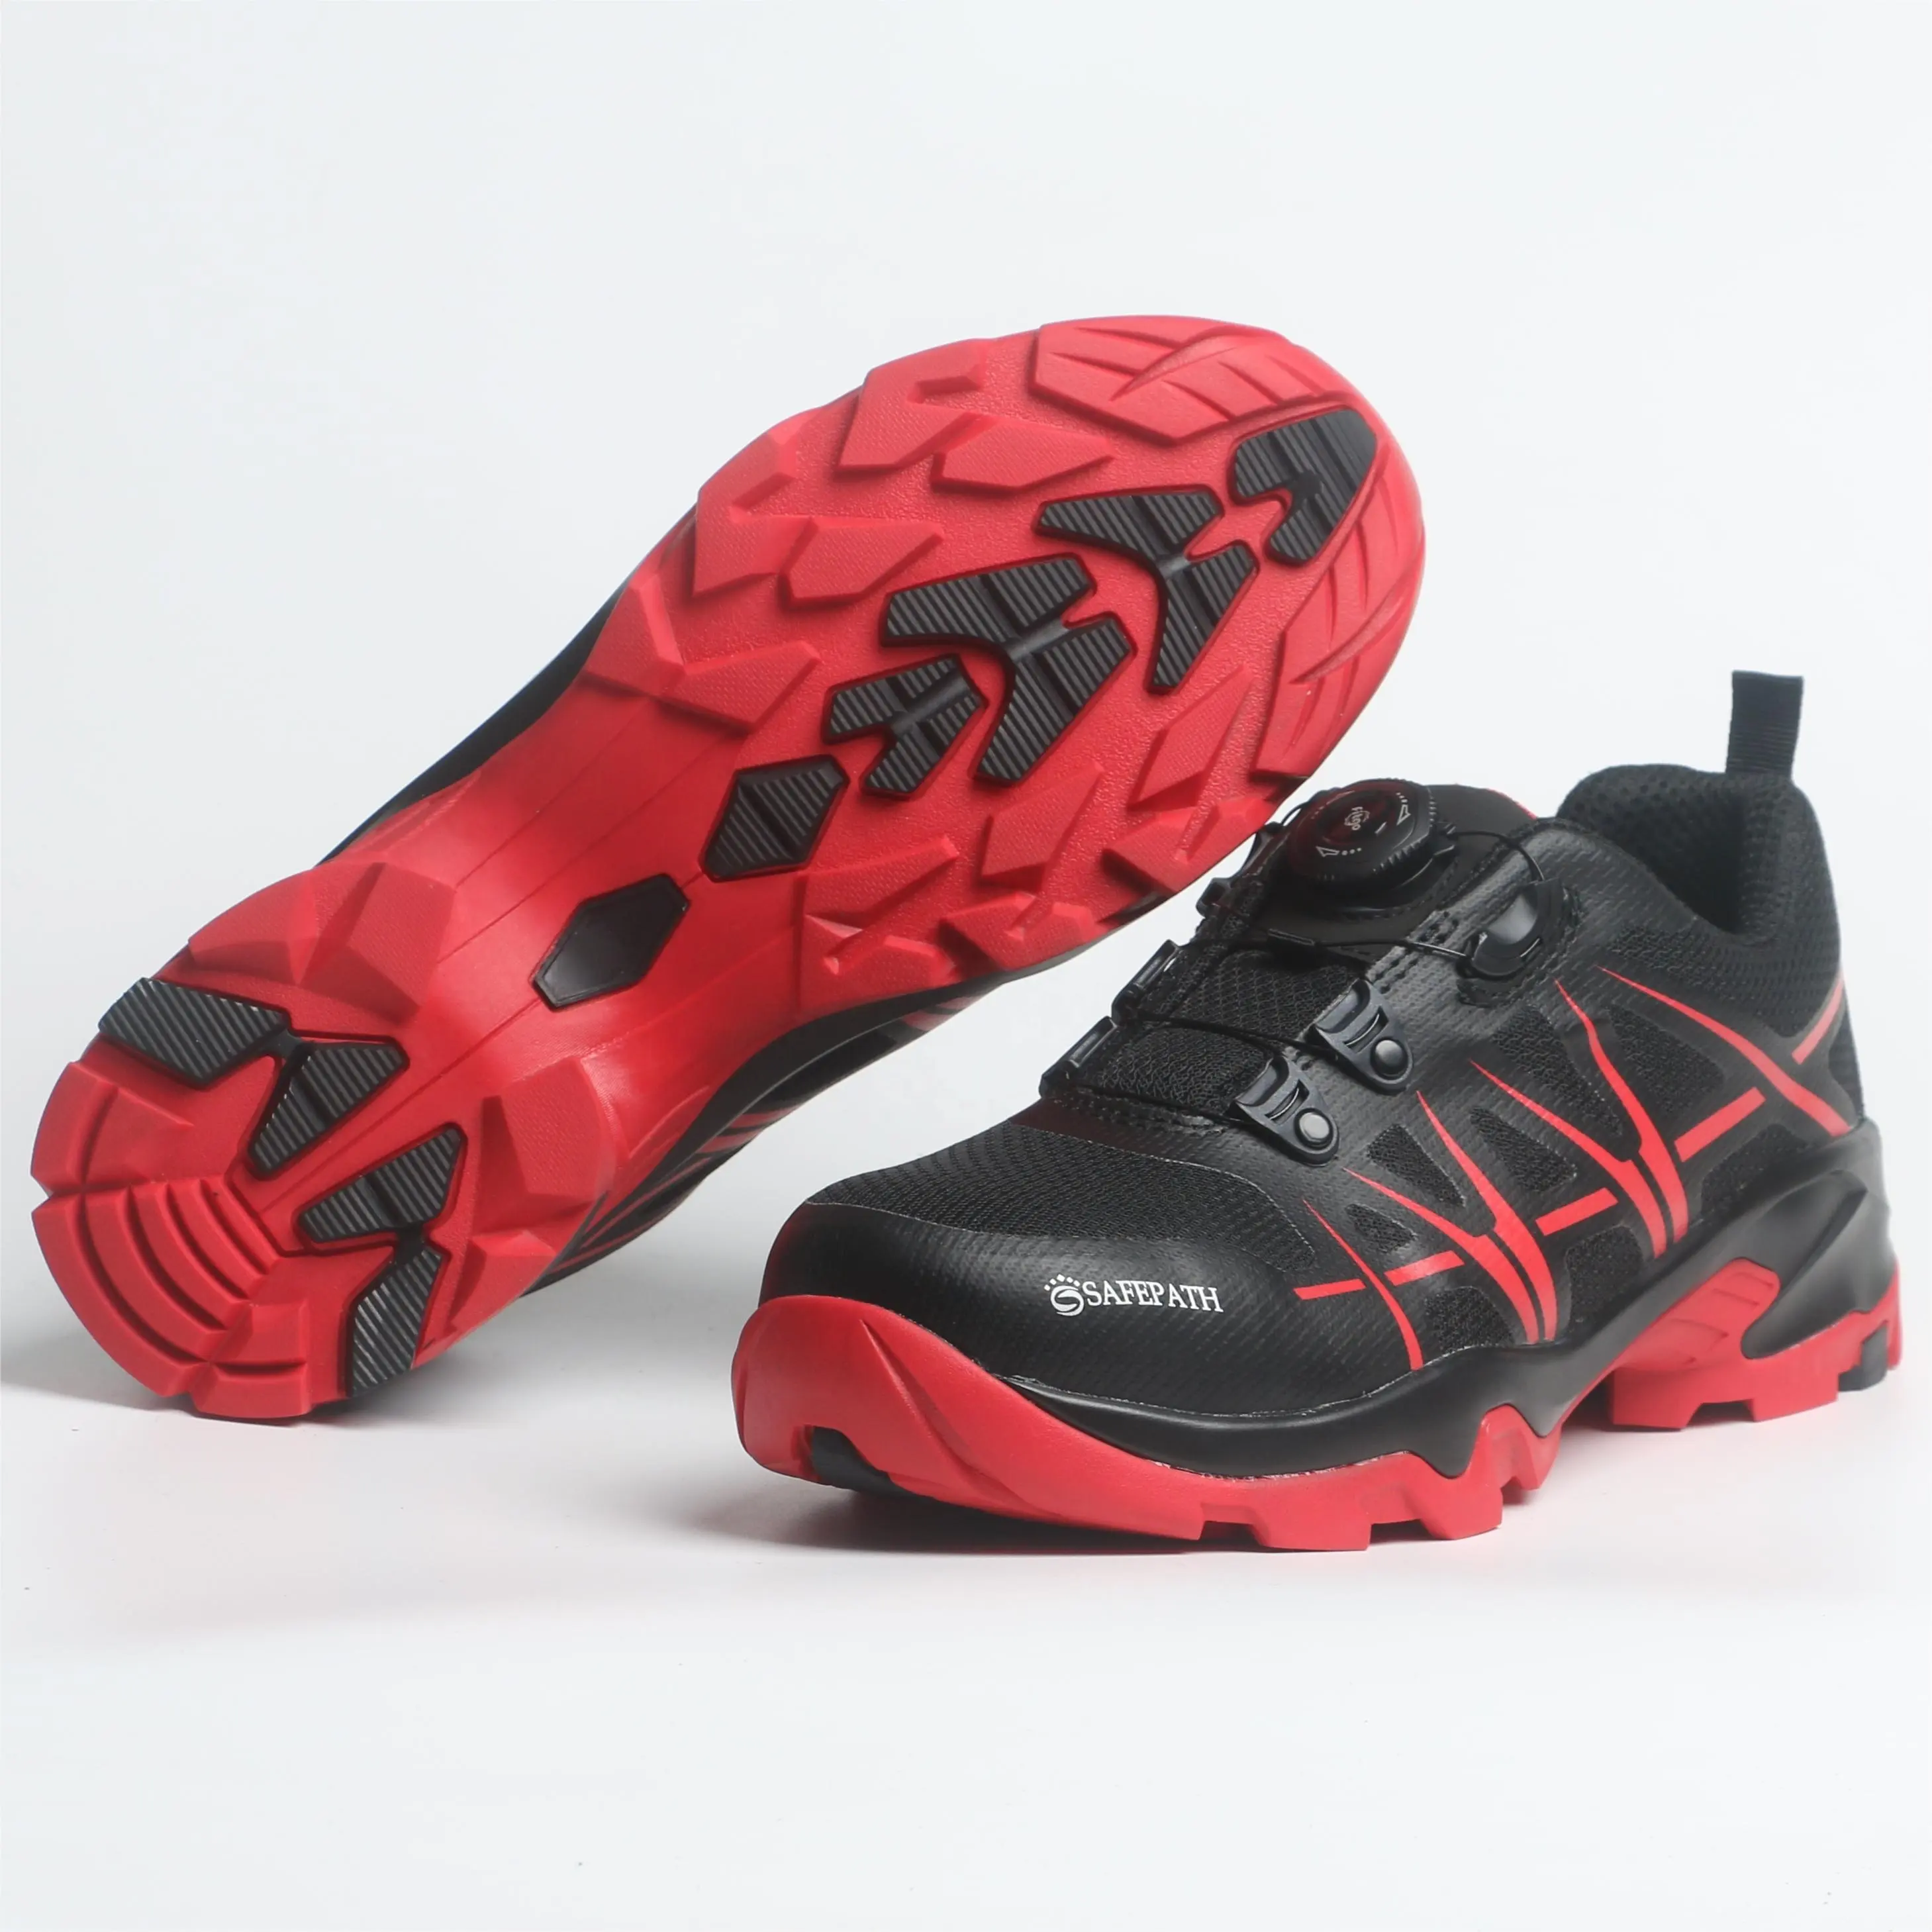 Zapatos de trabajo de seguridad ligeros para hombres Zapatos de seguridad resistentes a pinchazos para trabajo al aire libre Zapatos DE SEGURIDAD Woodland de moda para hombres